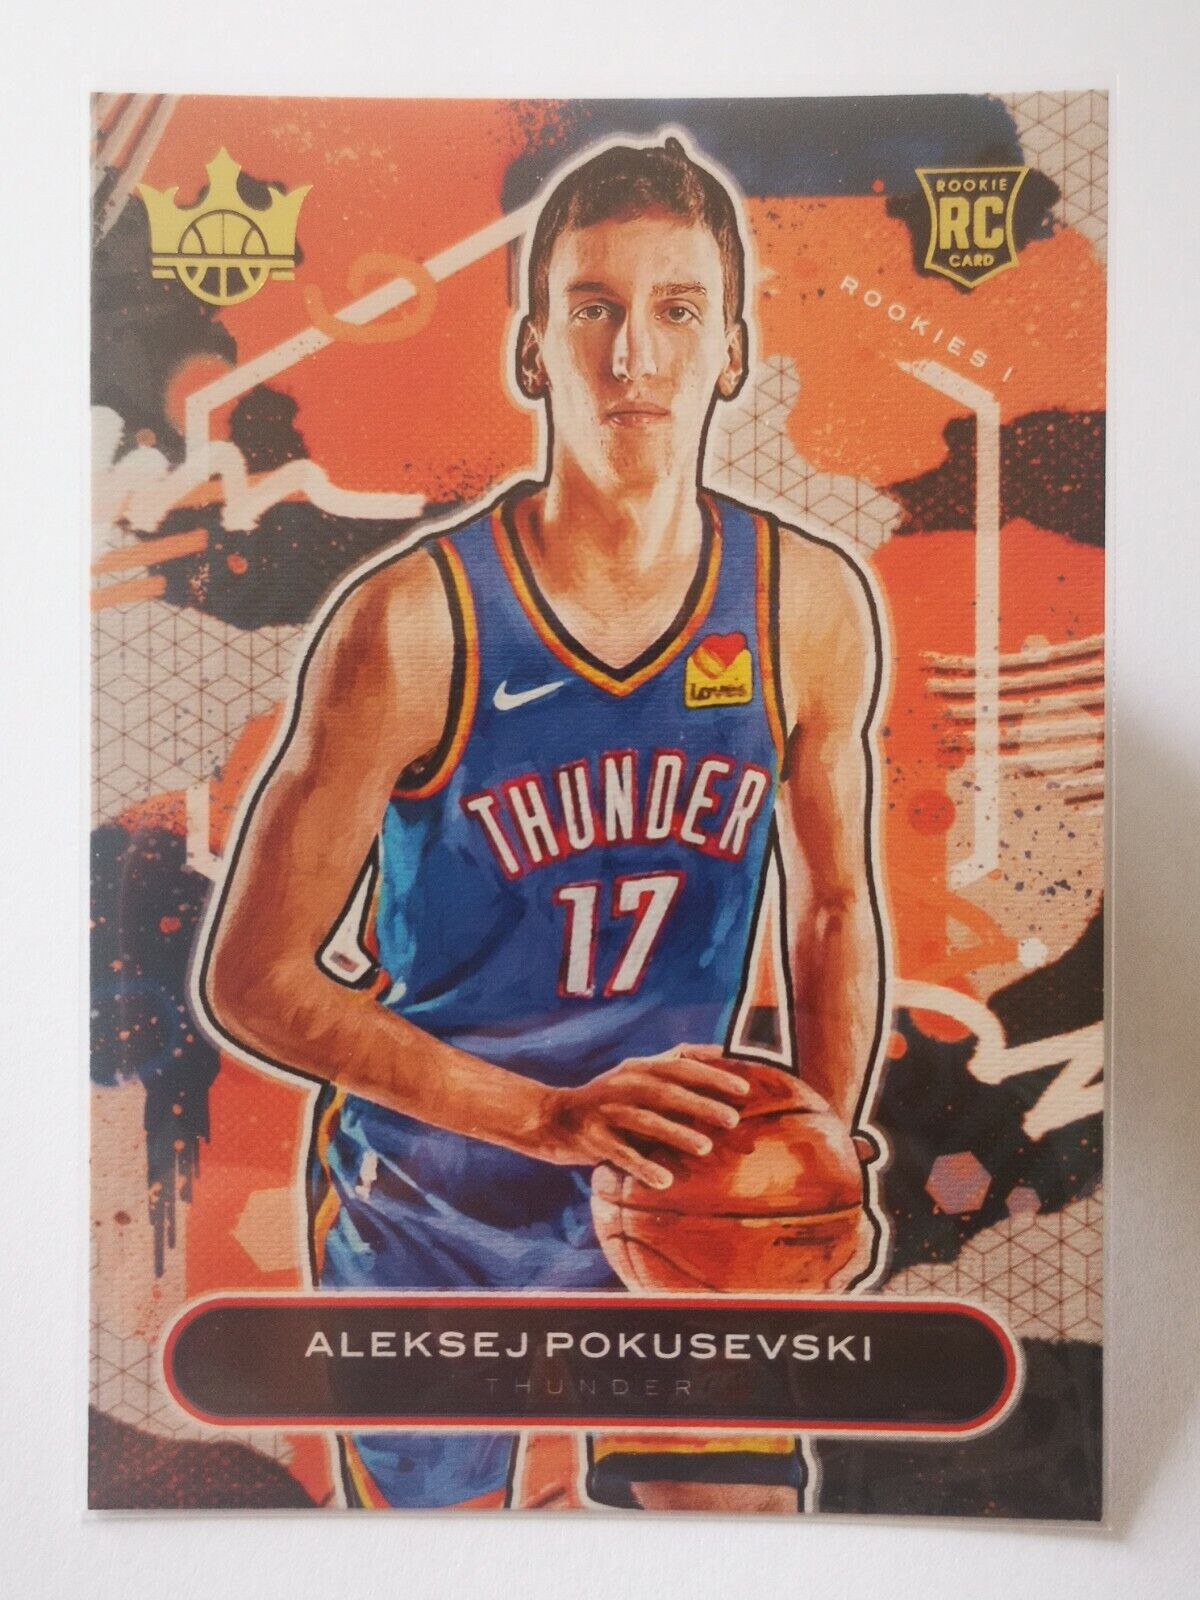 2020-21 Panini Court Kings N31 Card RC Rookie Alexey Pokusevski #89 Thunder